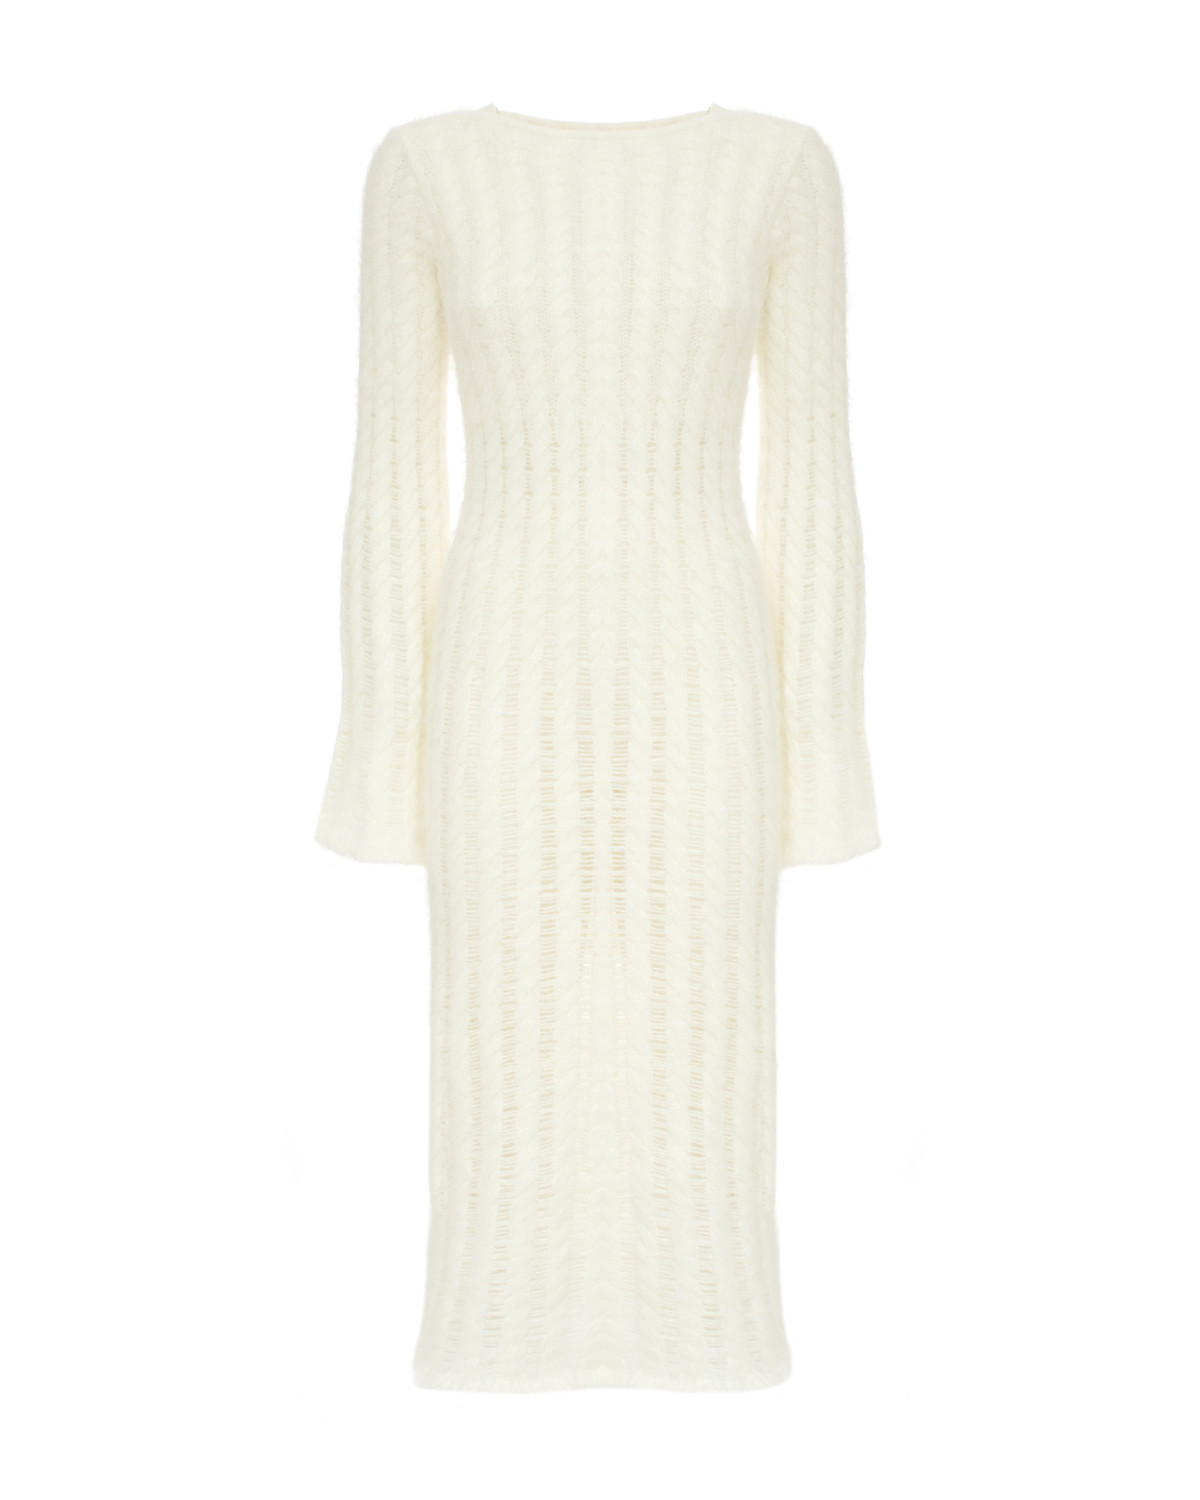 Pearl soft knit dress